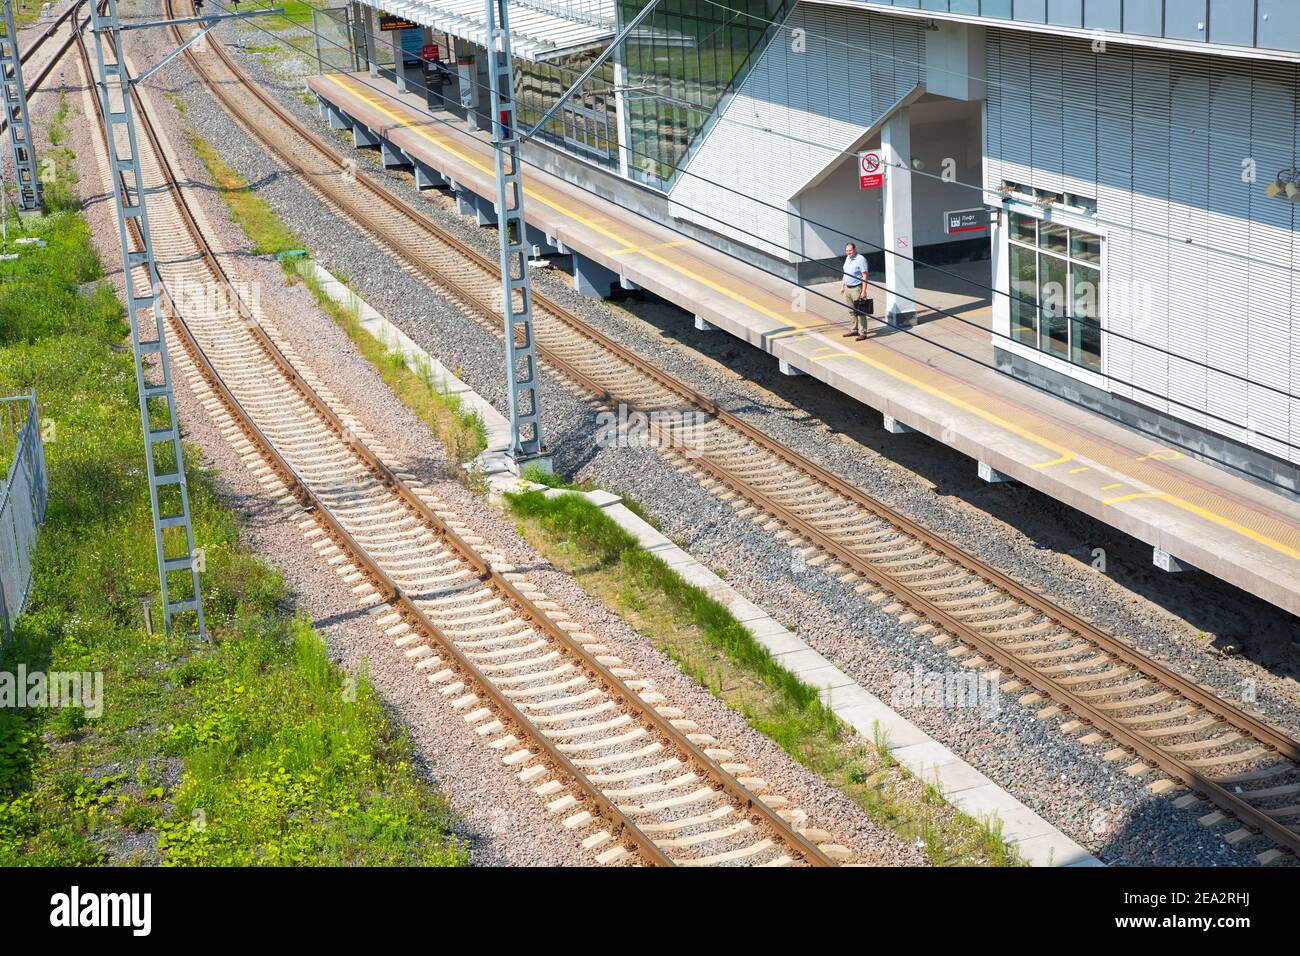 MCC (Krimstation) ist in Moskau. Kotlowka Bezirk ist in Moskau. Bahngleise an einem sonnigen Tag und eine Plattform mit einem Mann. Draufsicht. Russland Stockfoto